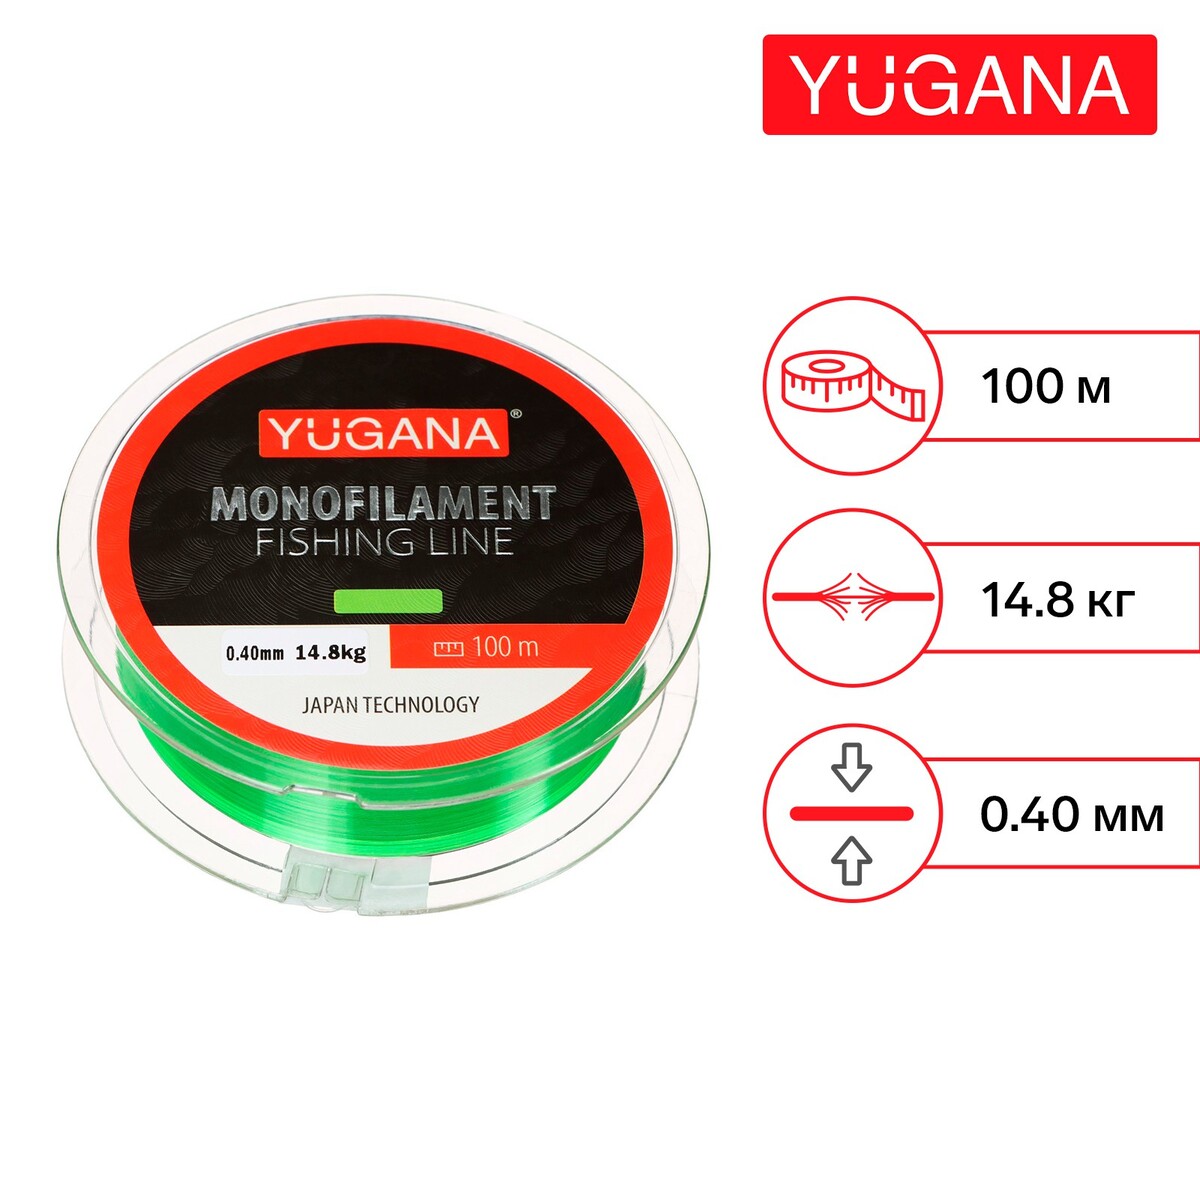 Леска монофильная yugana, диаметр 0.4 мм, тест 14.8 кг, 100 м, зеленая